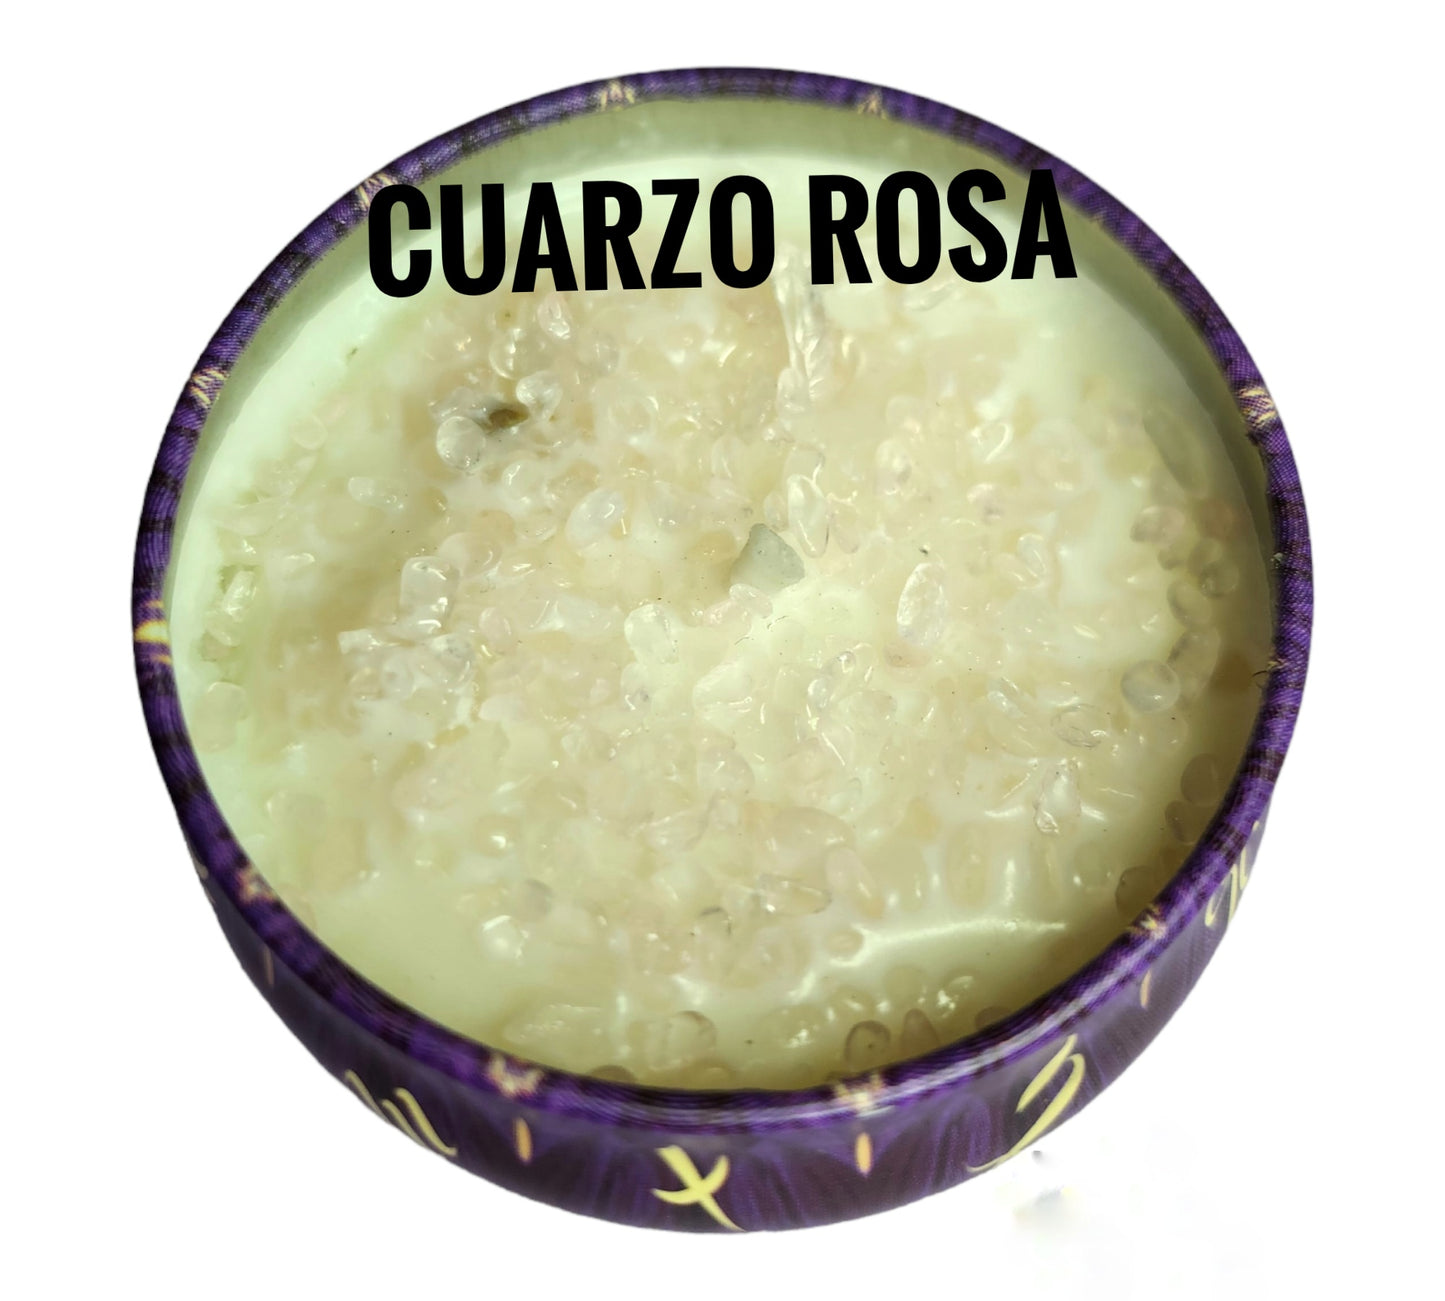 Cuarzo Rosa (Amor Propio)